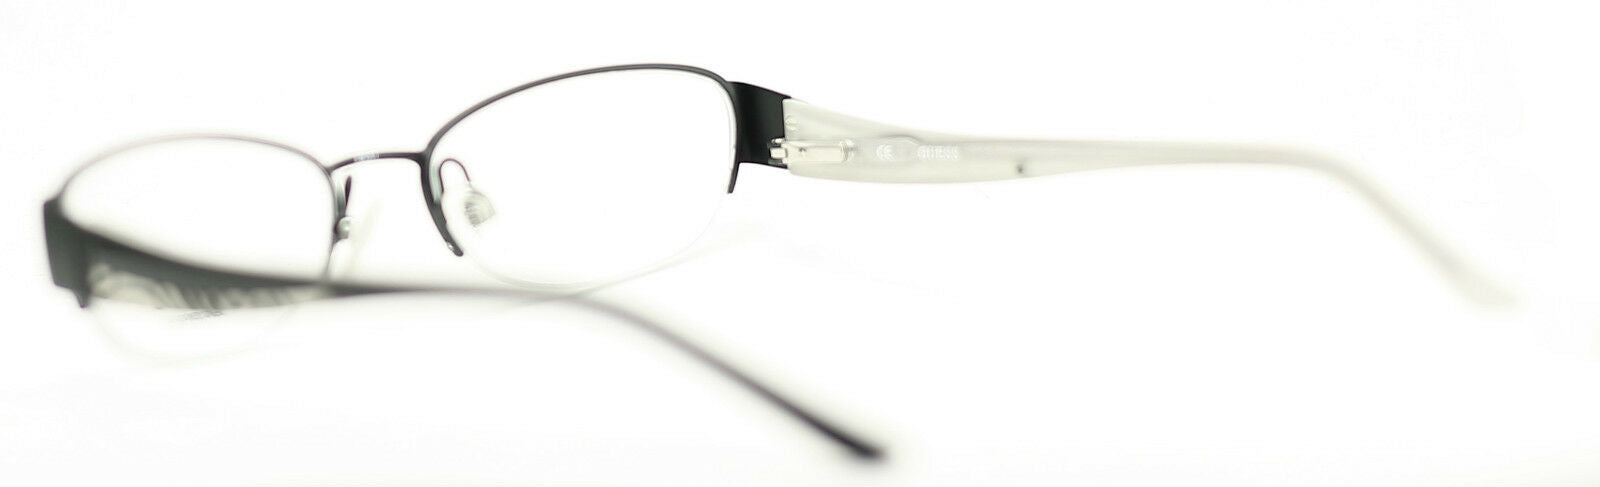 GUESS GU2263 BLK Eyewear FRAMES Glasses Eyeglasses RX Optical BNIB New - TRUSTED